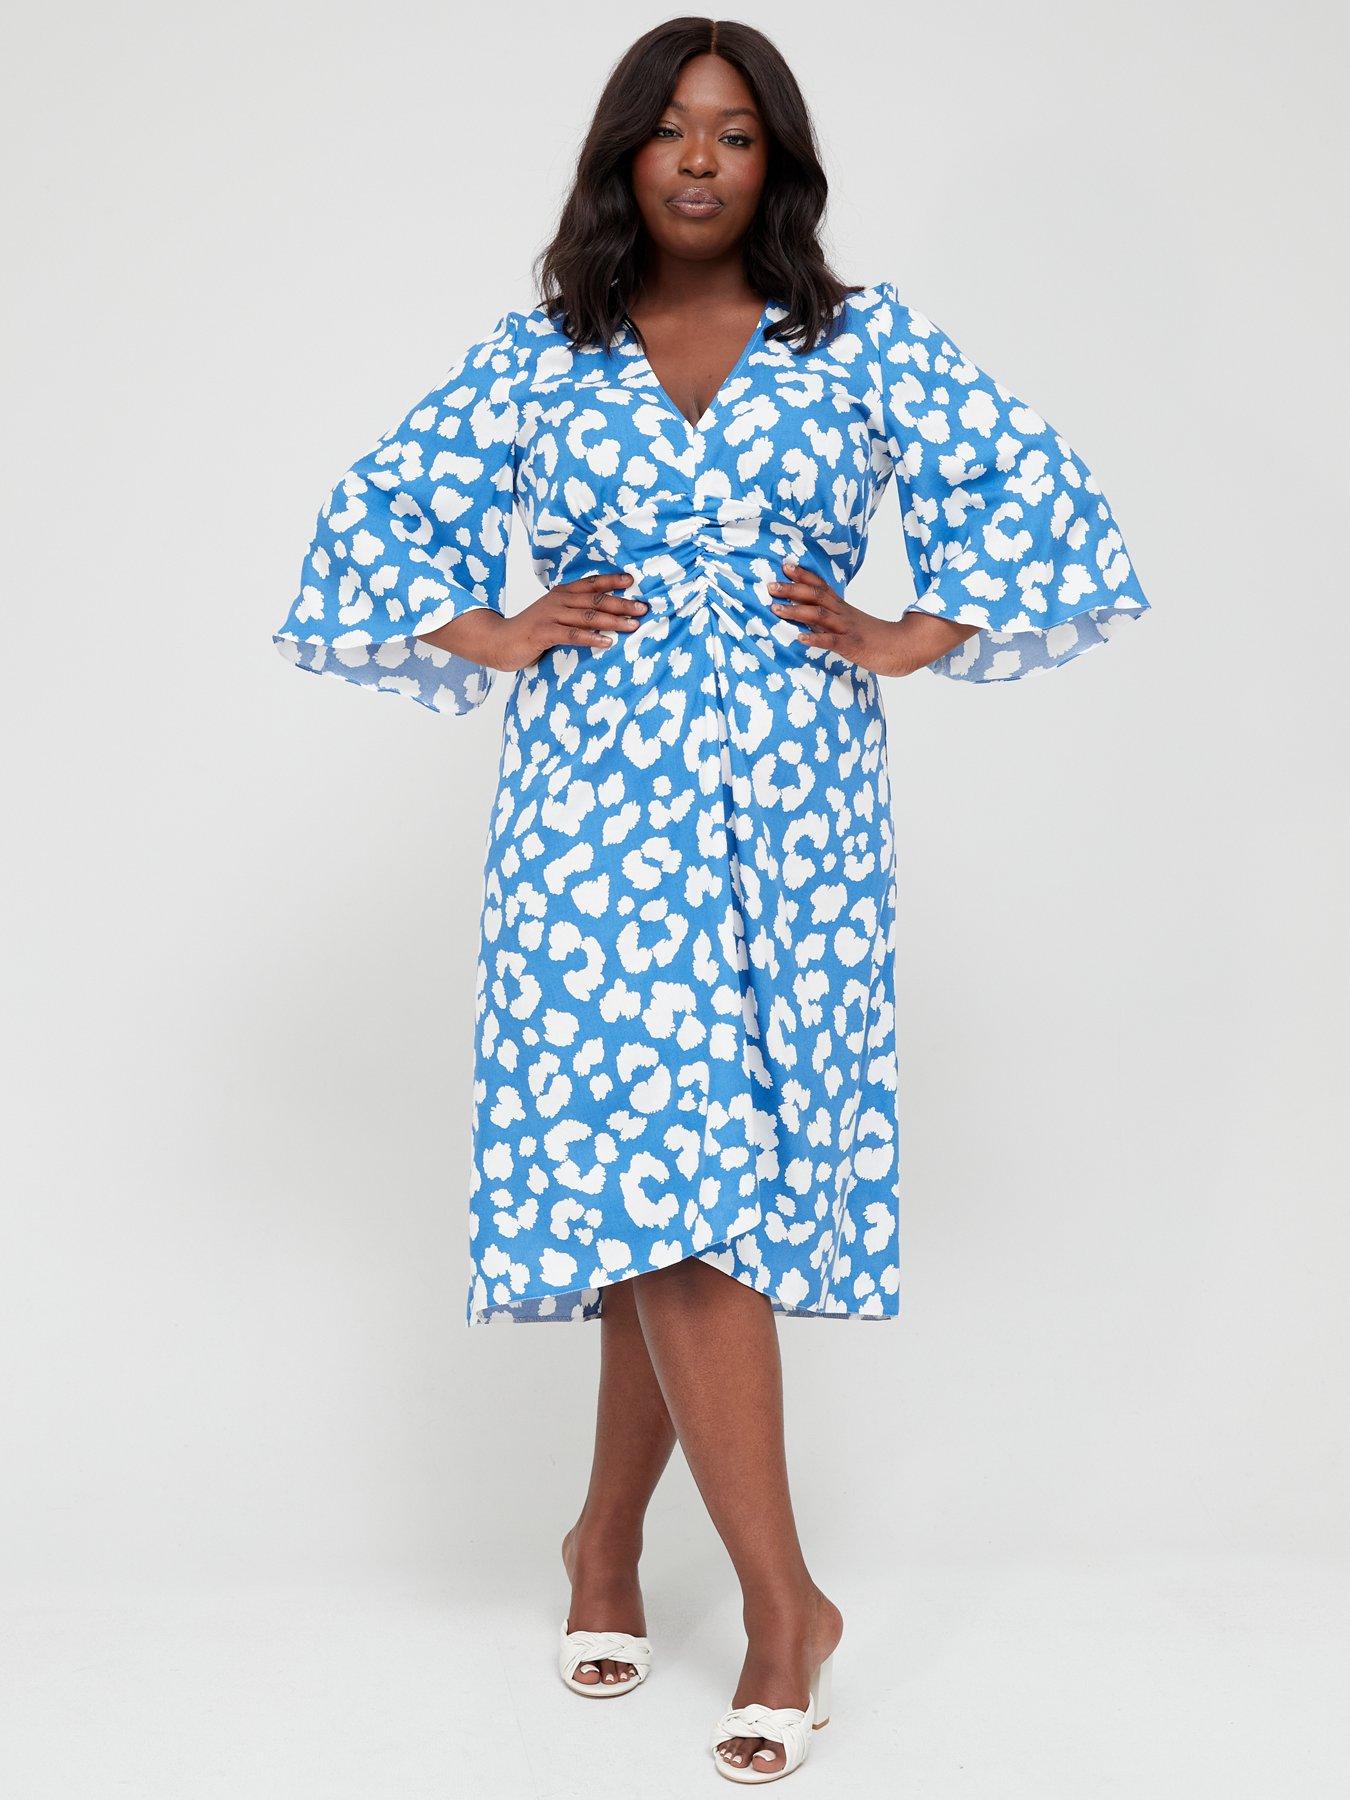 Life Size Cutout Blue Dress Details about   Zara Martin